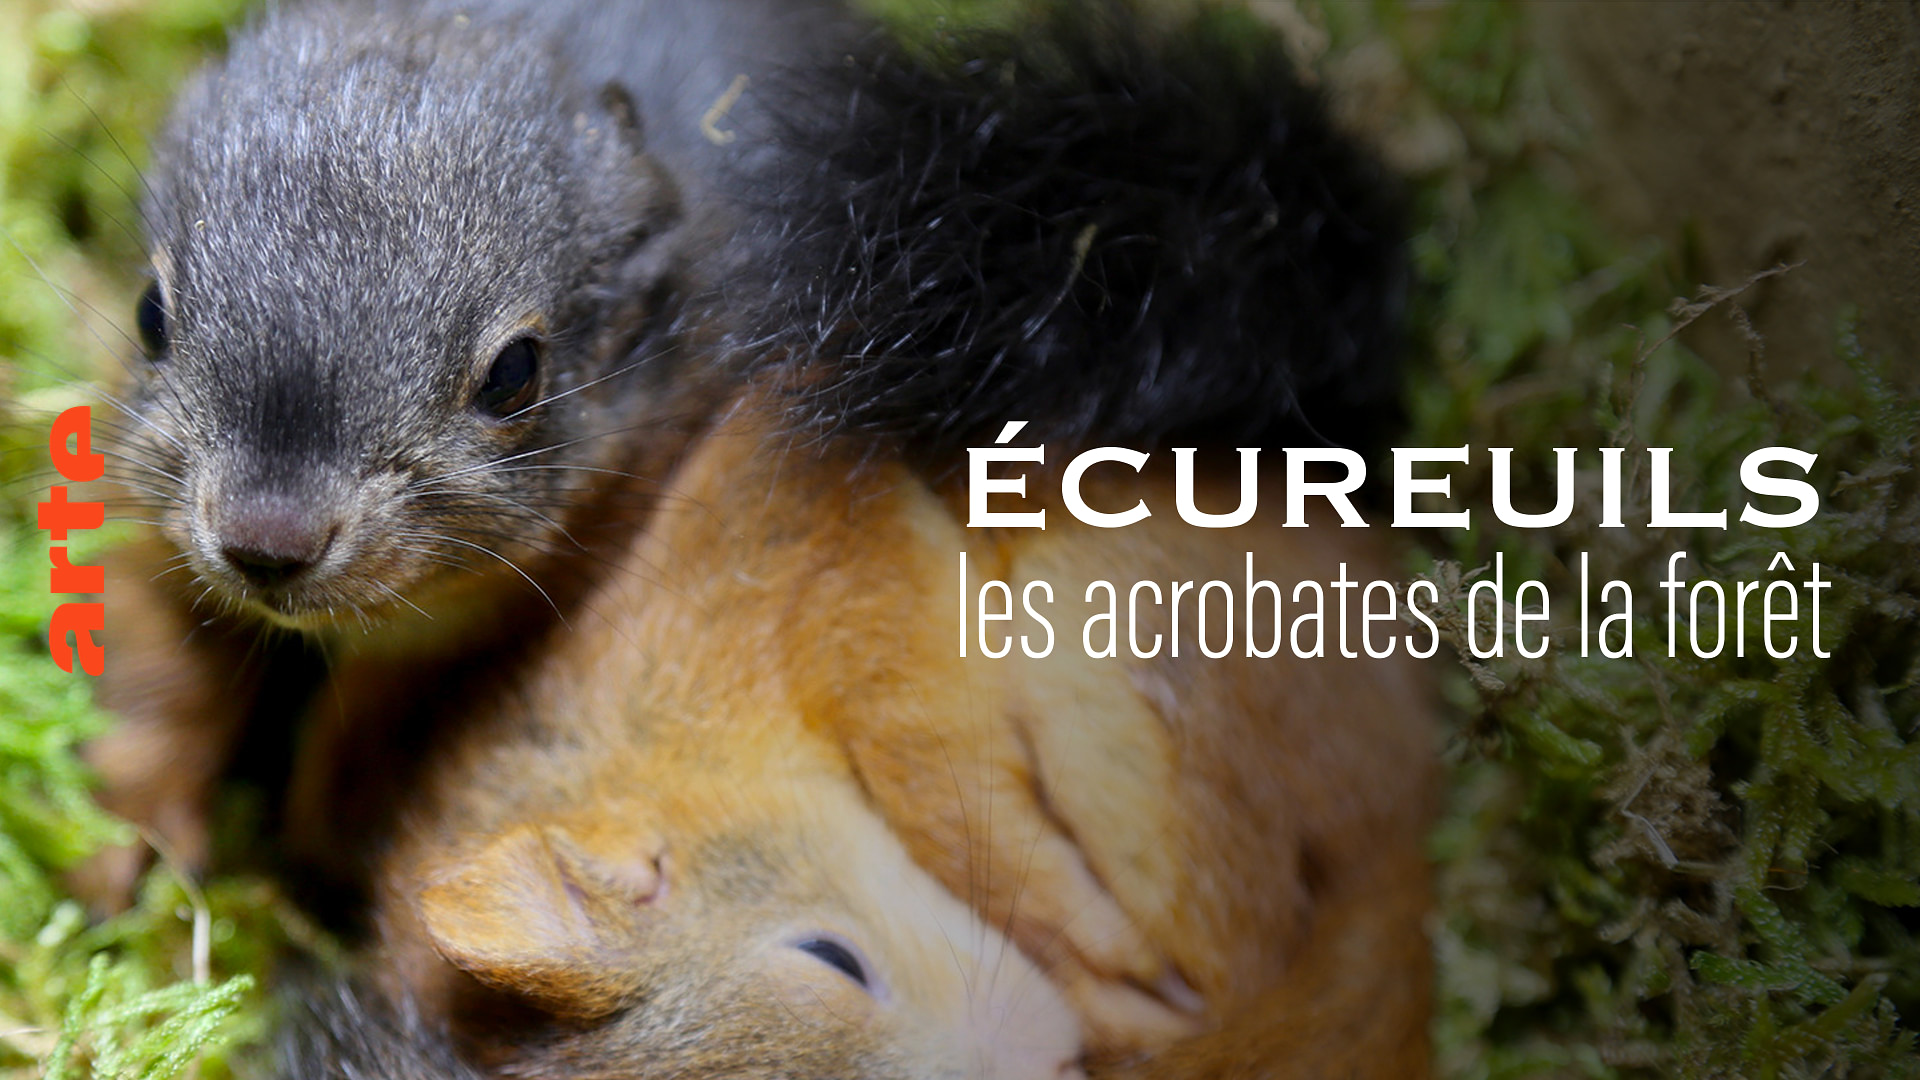 Ecureuil: Le farfadet de la forêt